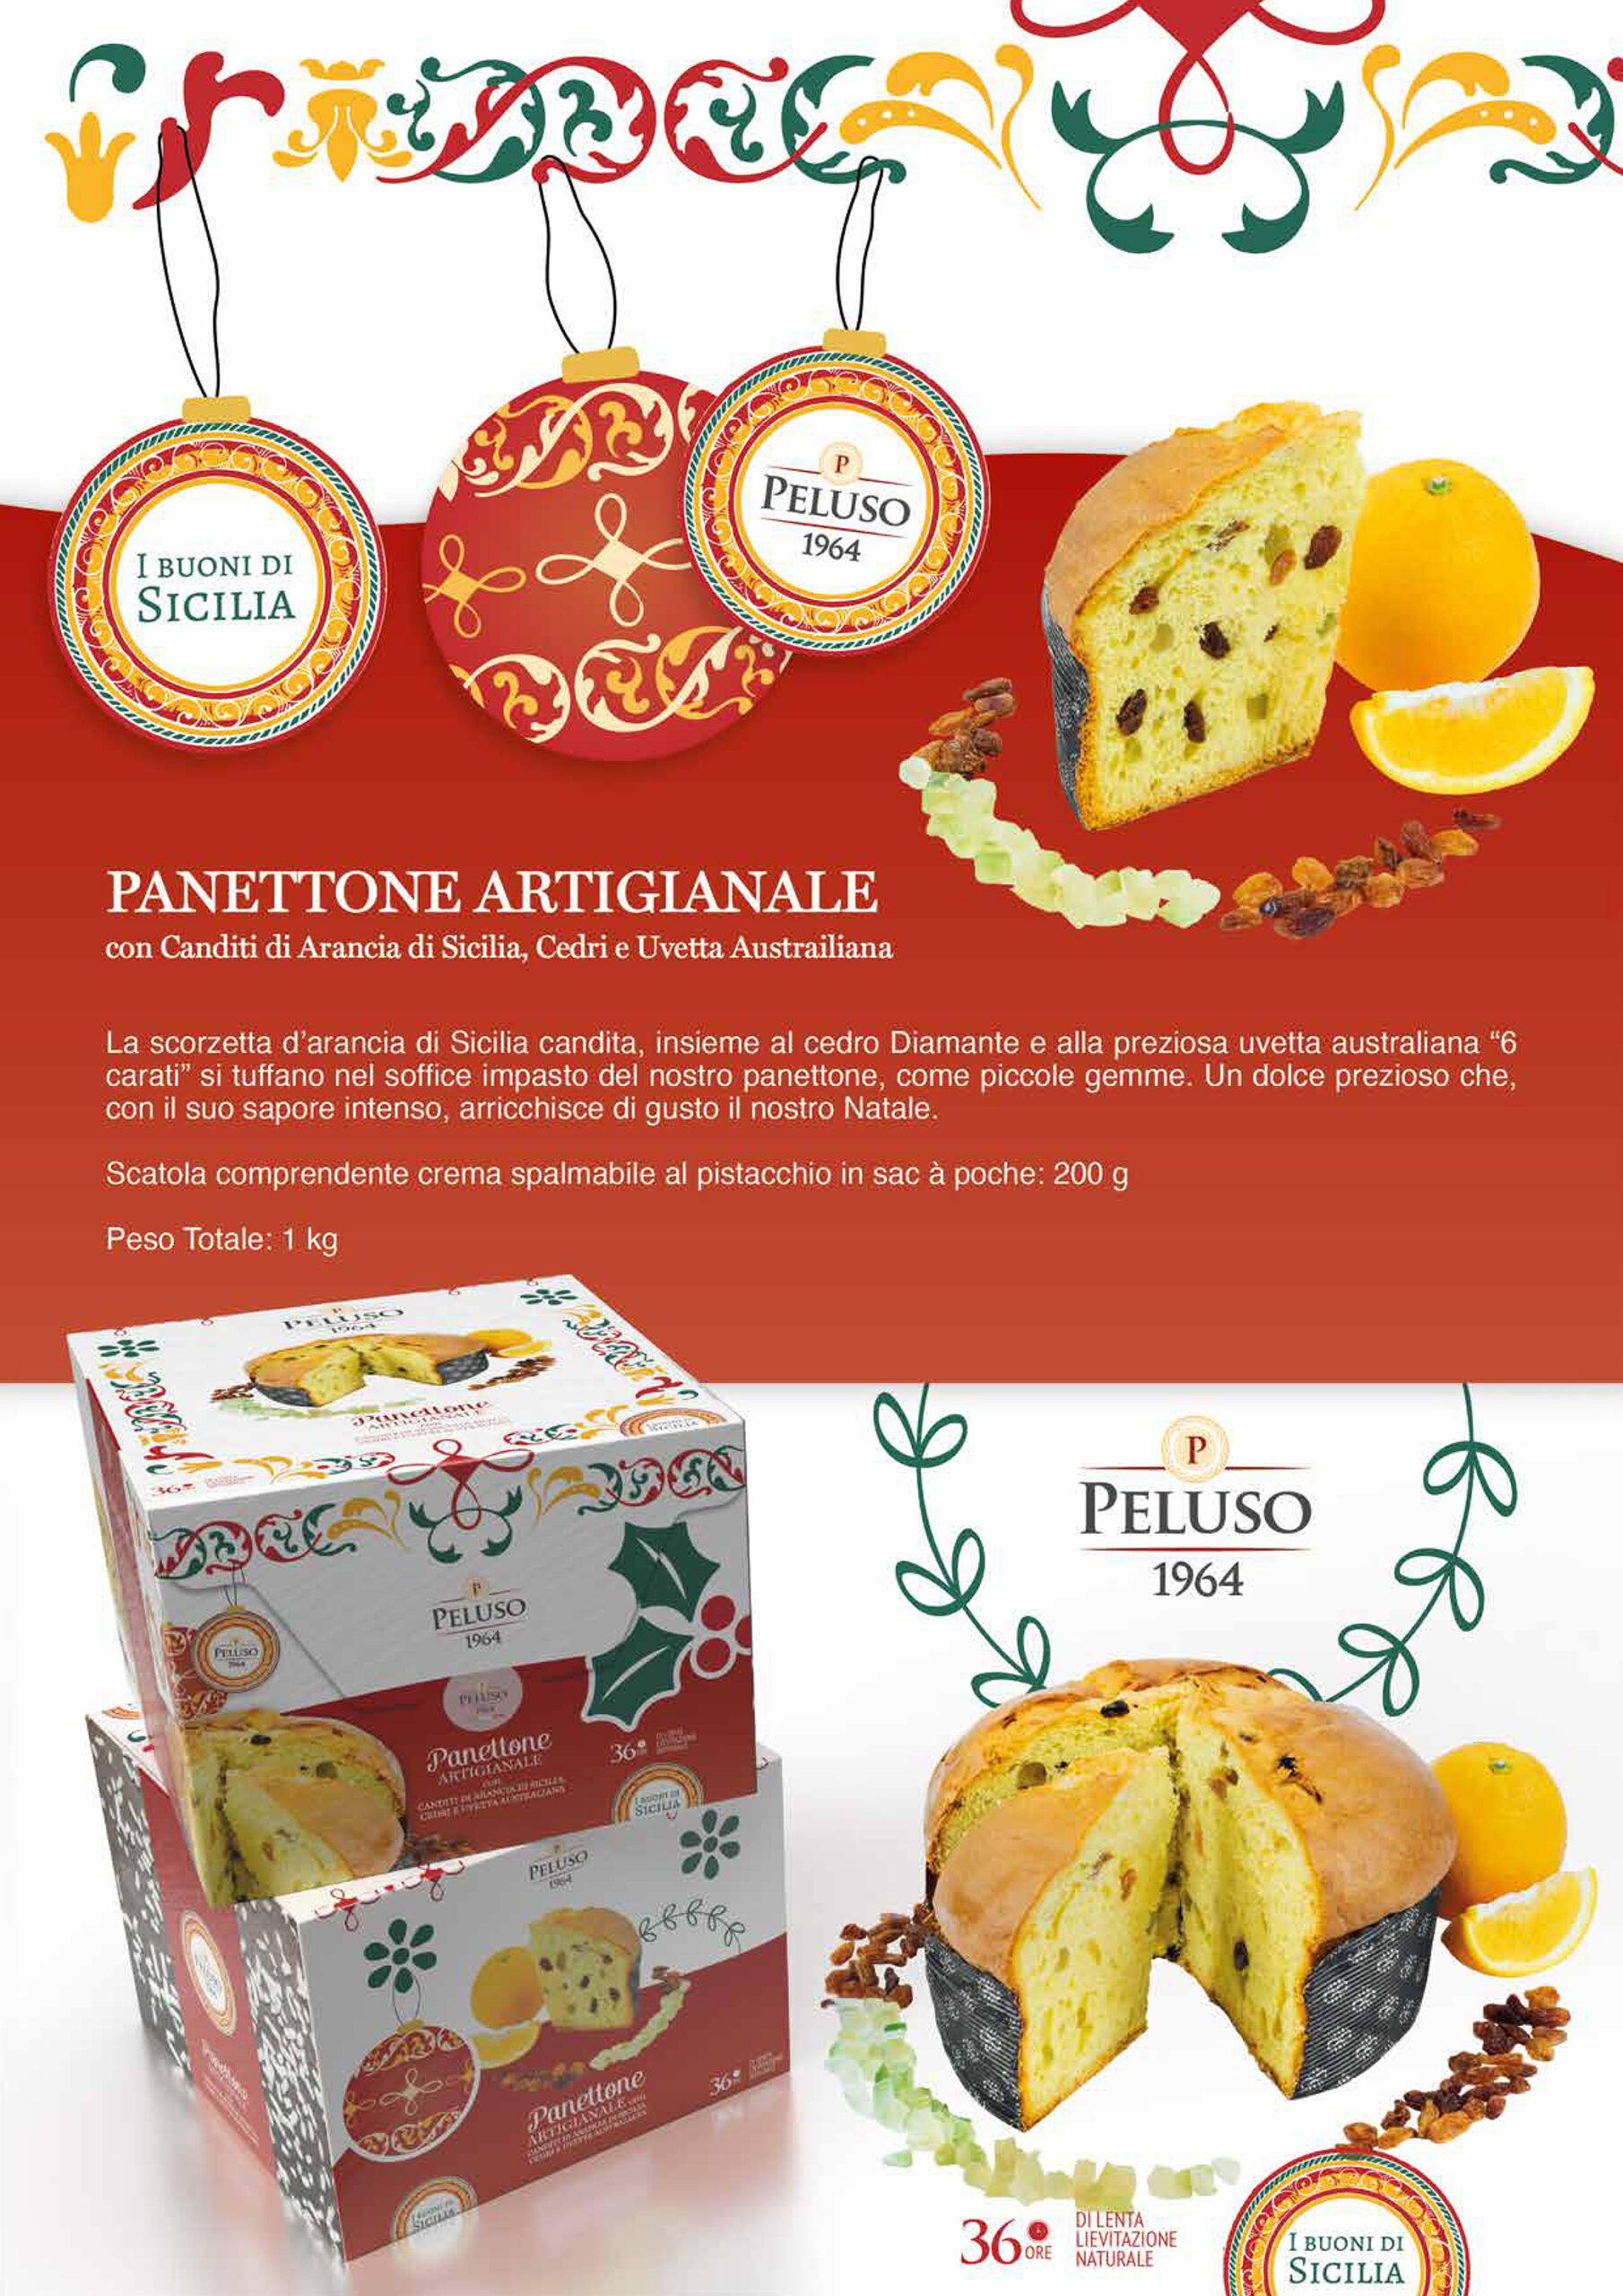 Panettone-artigianale-con-canditi-di-arancia-di-Sicilia-cedri-e-uvetta-australiana-1-Kg